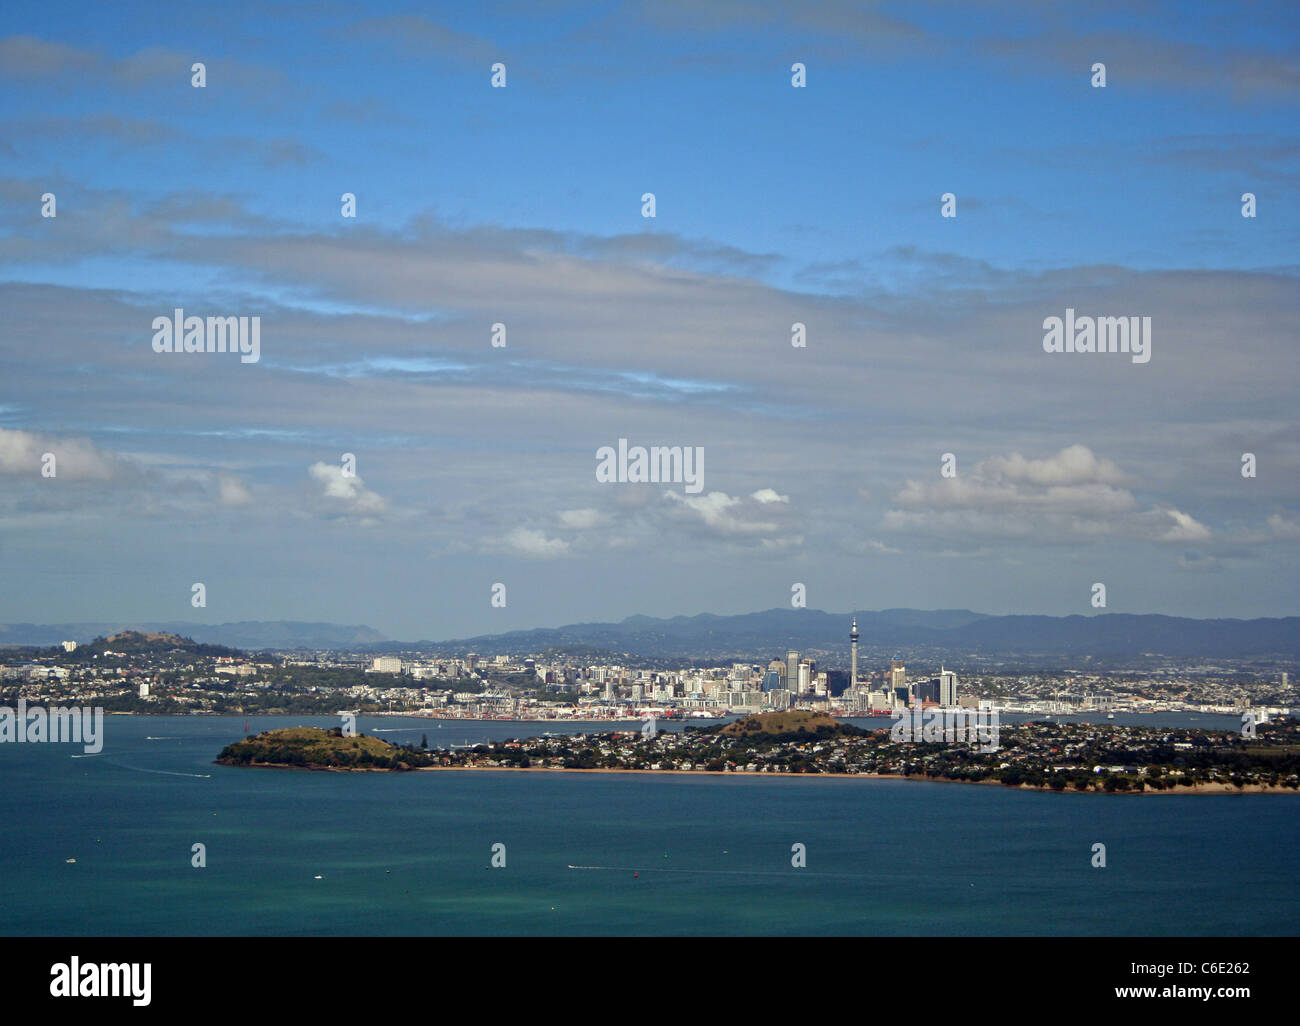 L'Auckland skyline, prises dans l'ensemble de l'île de Rangitoto Devonport Banque D'Images